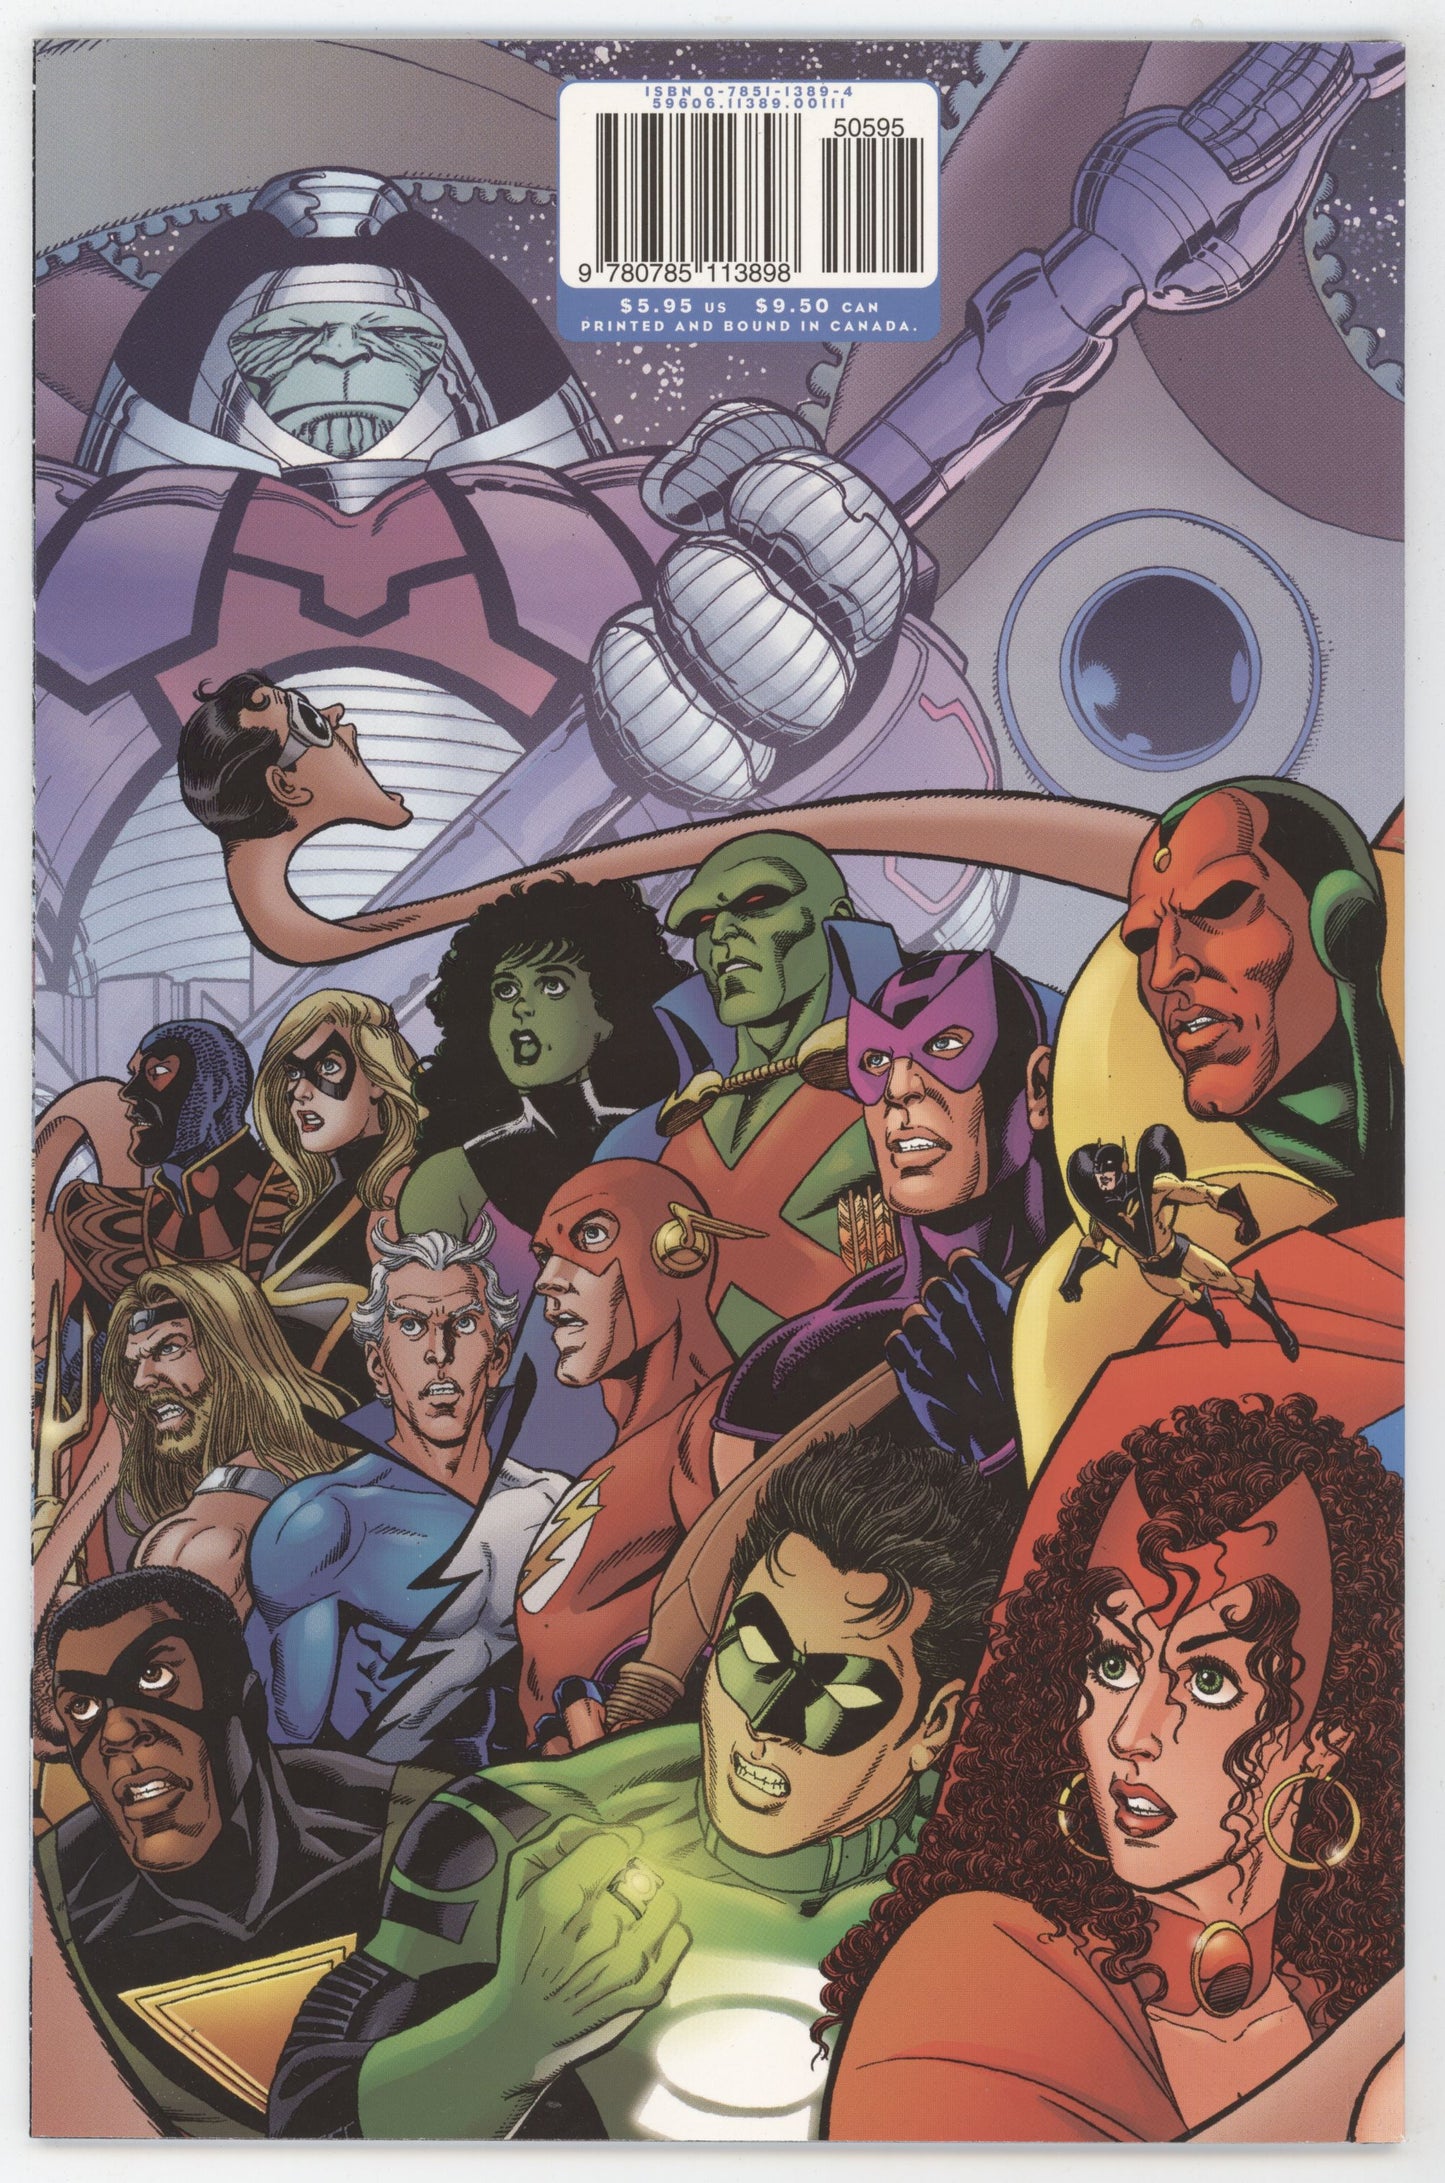 JLA Avengers 1 Marvel DC 2003 NM+ 9.6 Signed Kurt Busiek